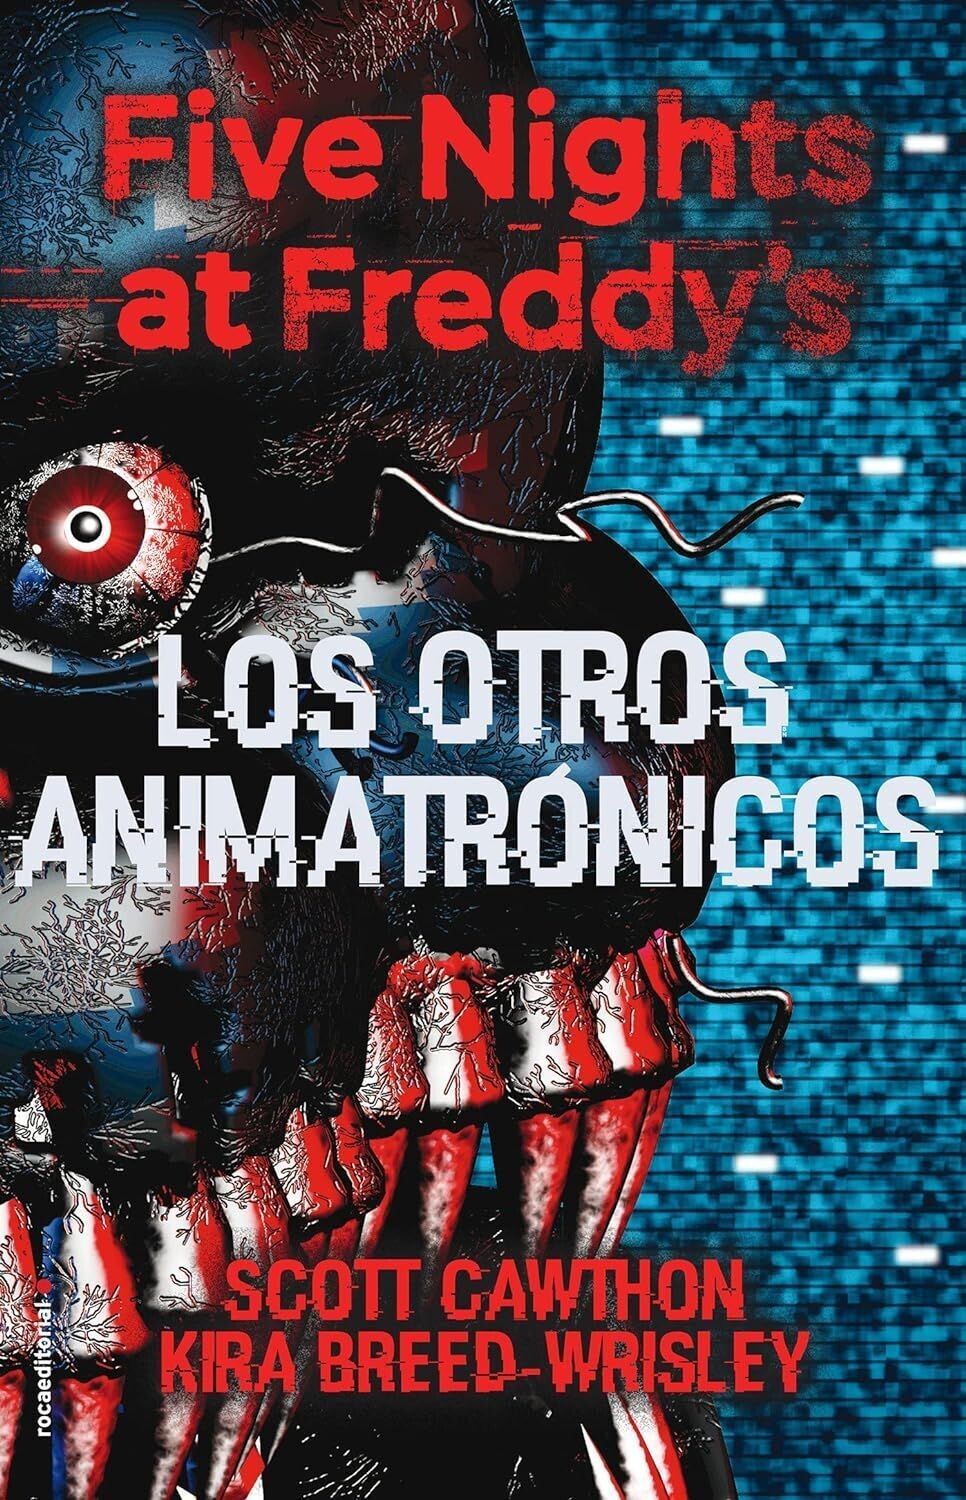 Five Nights At Freddys Los otros animatrónicos